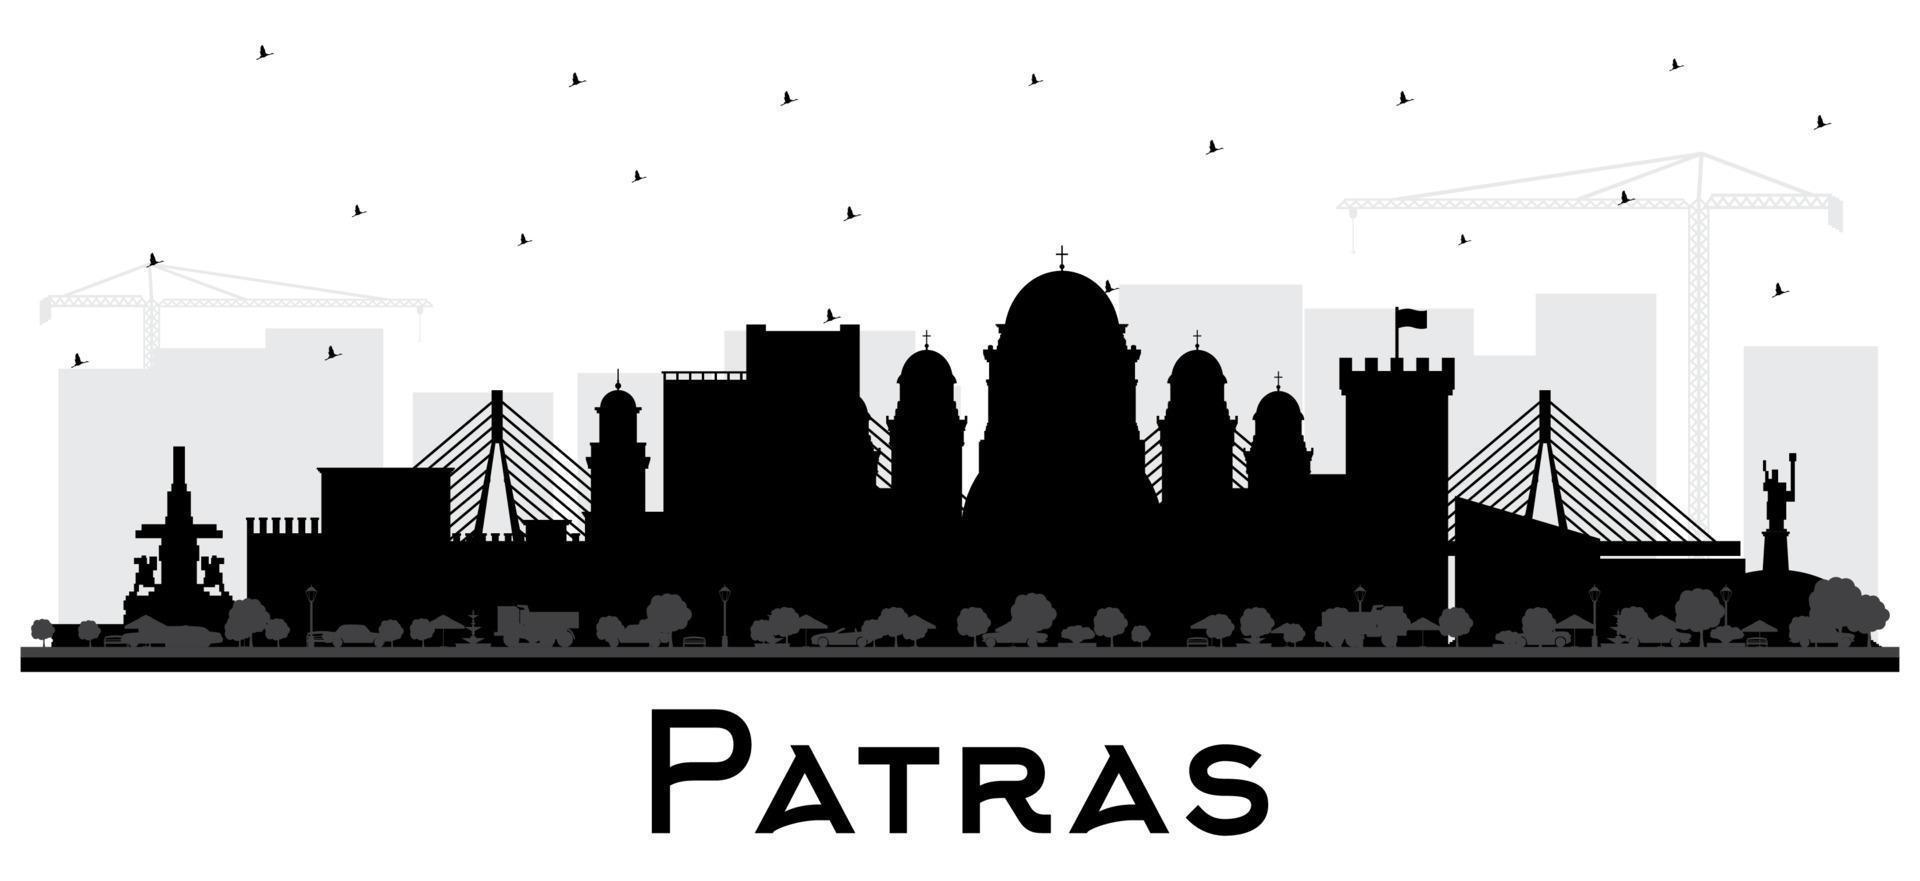 patras griechenland stadtsilhouette mit schwarzen gebäuden isoliert auf weiß. vektor